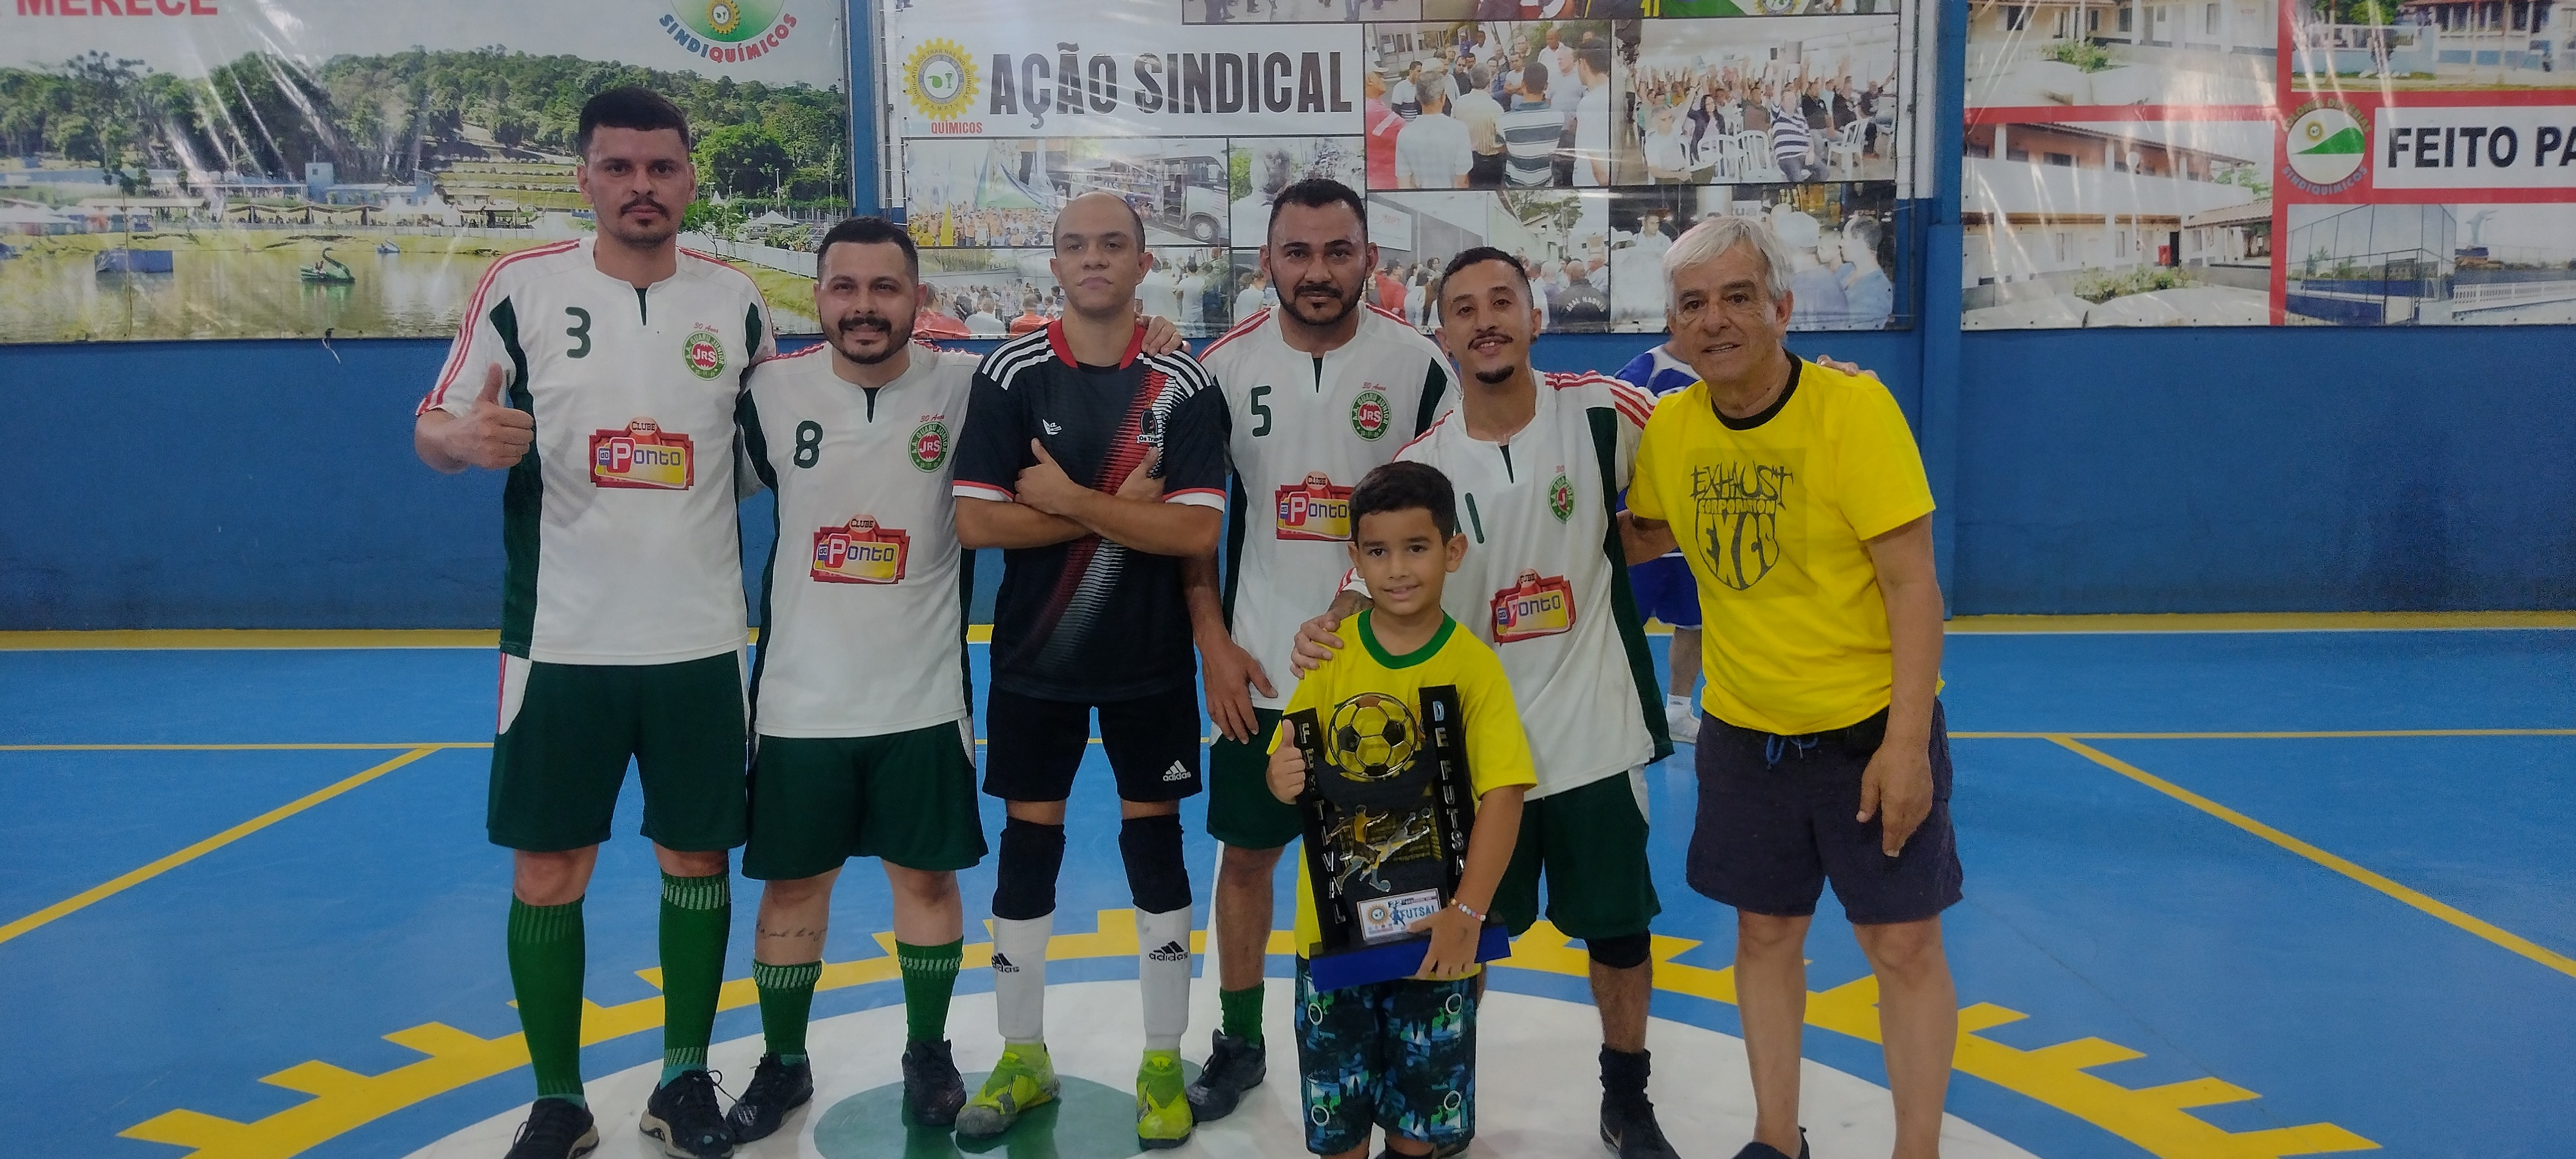 22-Festival-de-Futsal-02-18